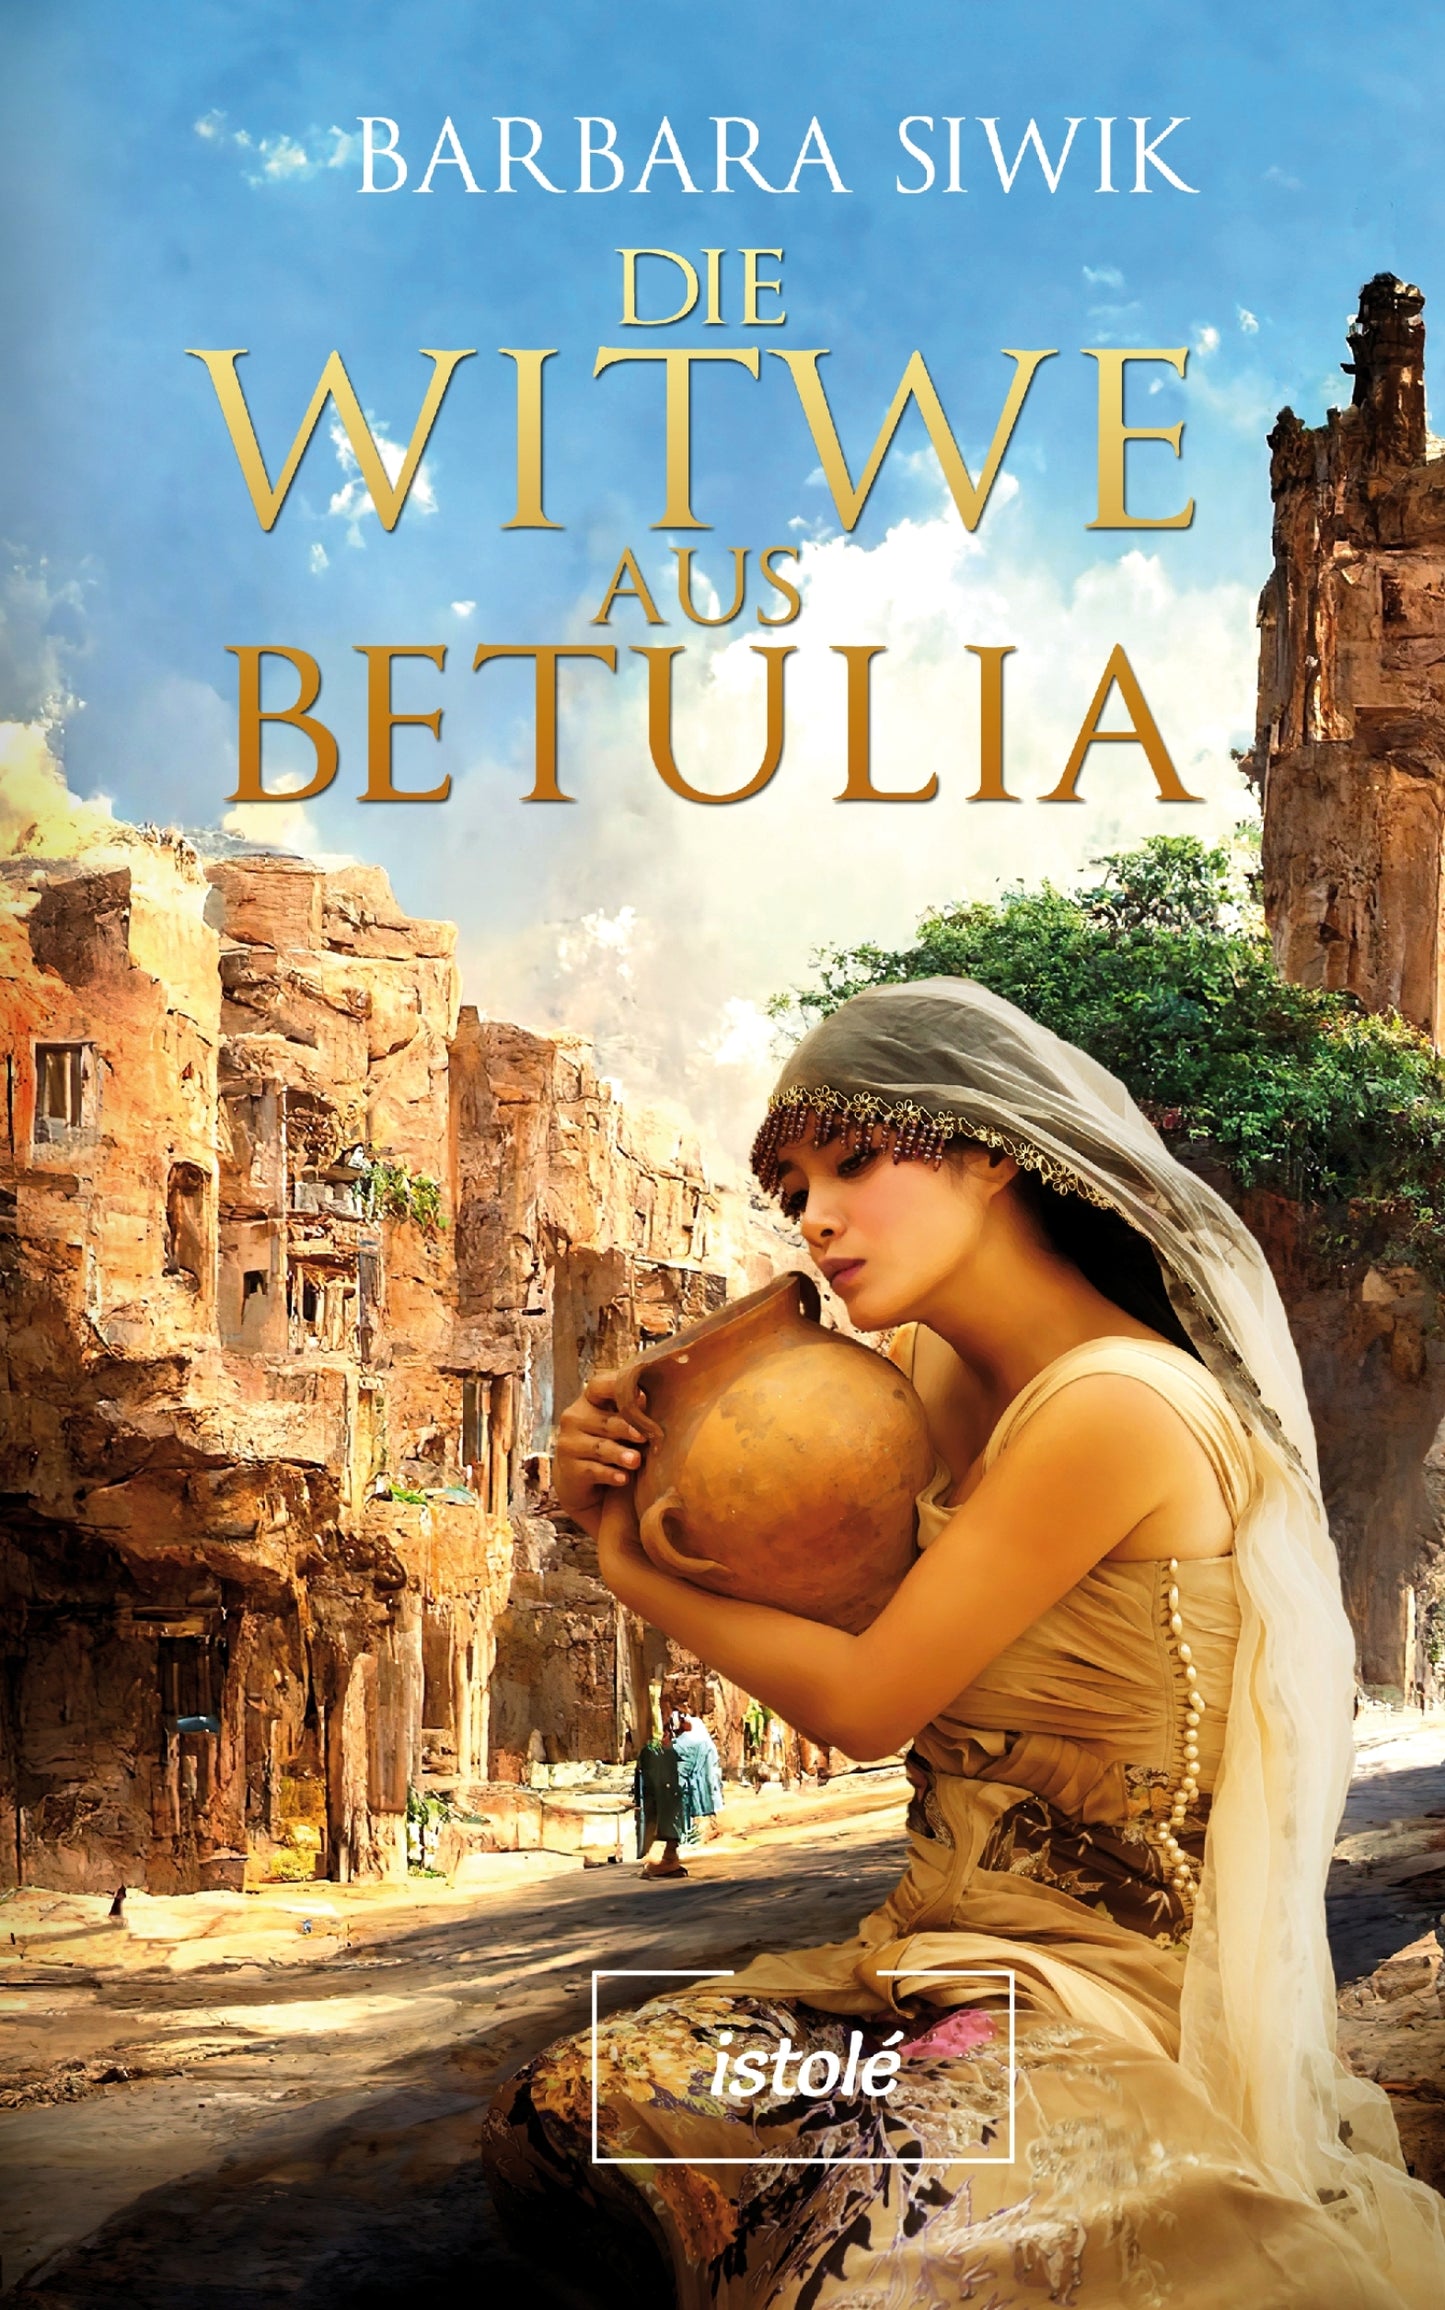 The Widow of Bethulia [Die Witwe aus Betulia]